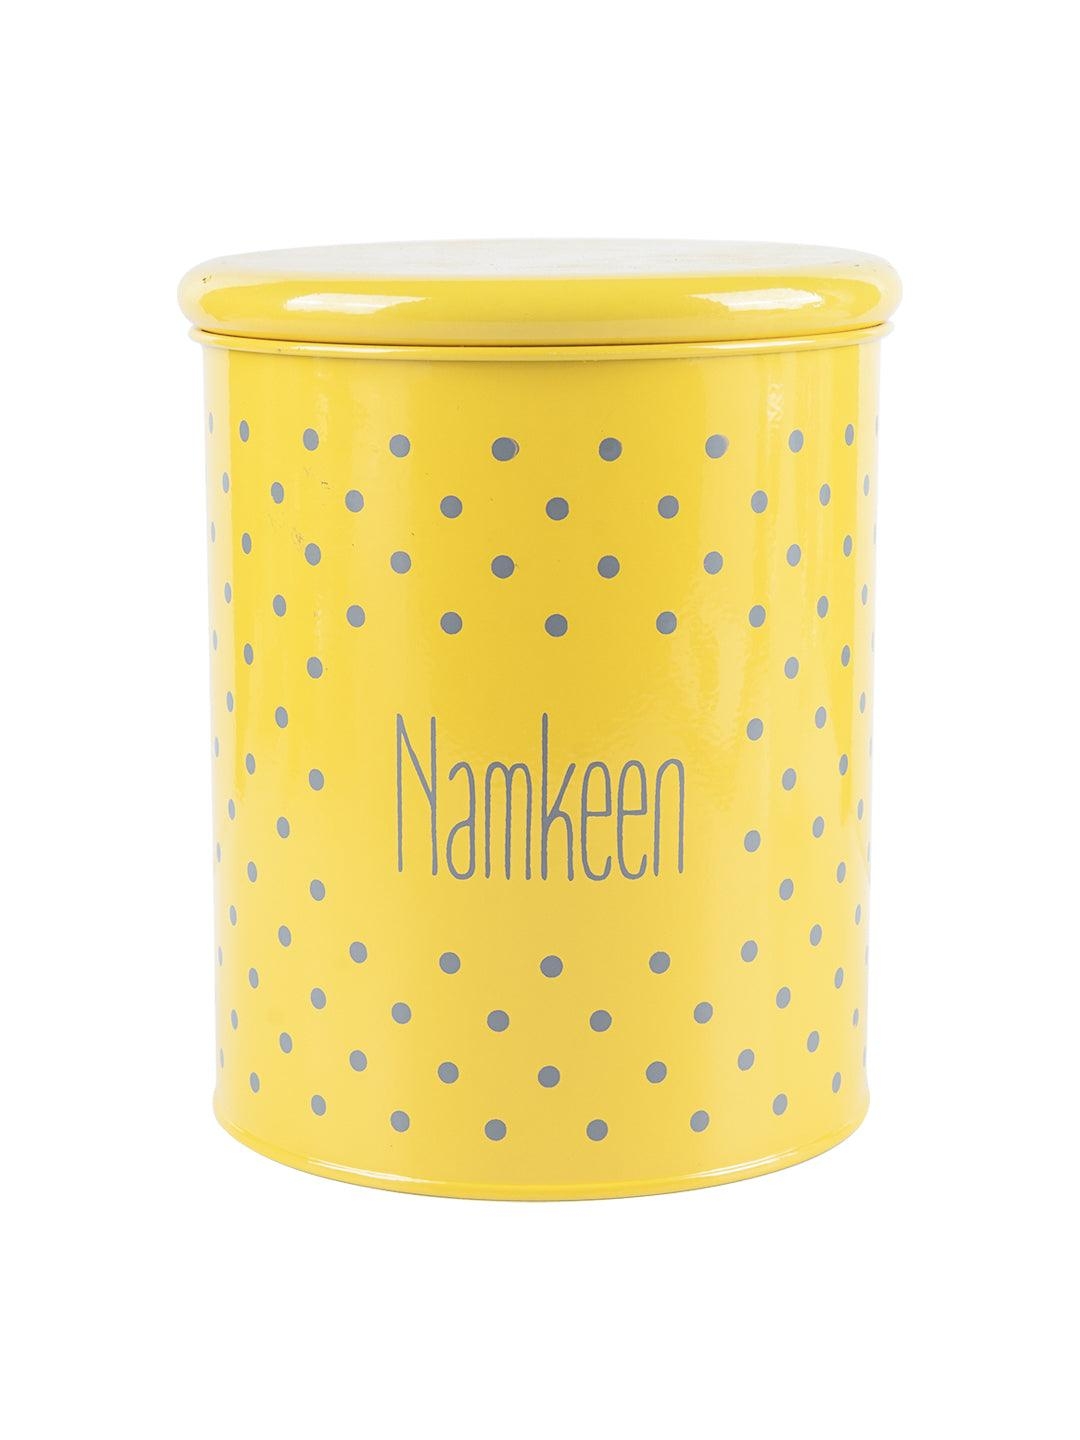 Market 99 | Namkeen Jar With Lid - (Yellow, 1700mL) 2